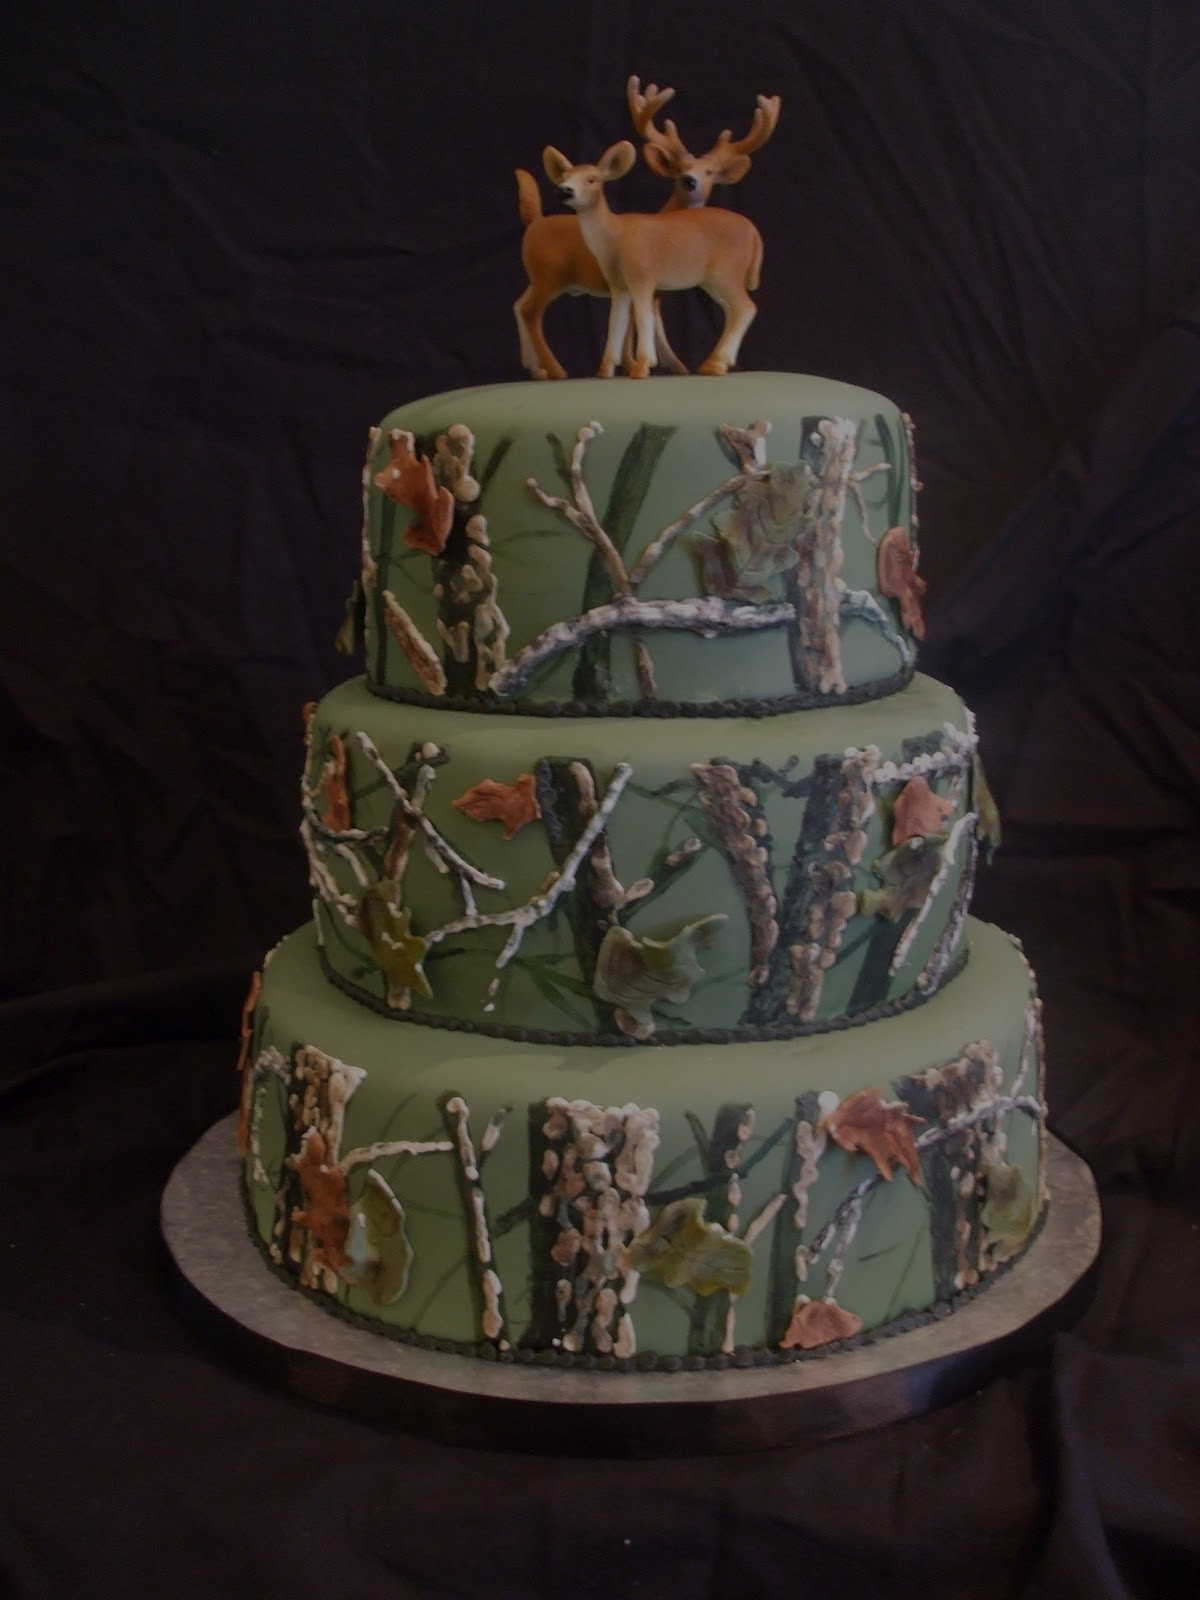 Deer Birthday Cake
 Top 20 Most Viewed Cakes Hunting Groom s Cake